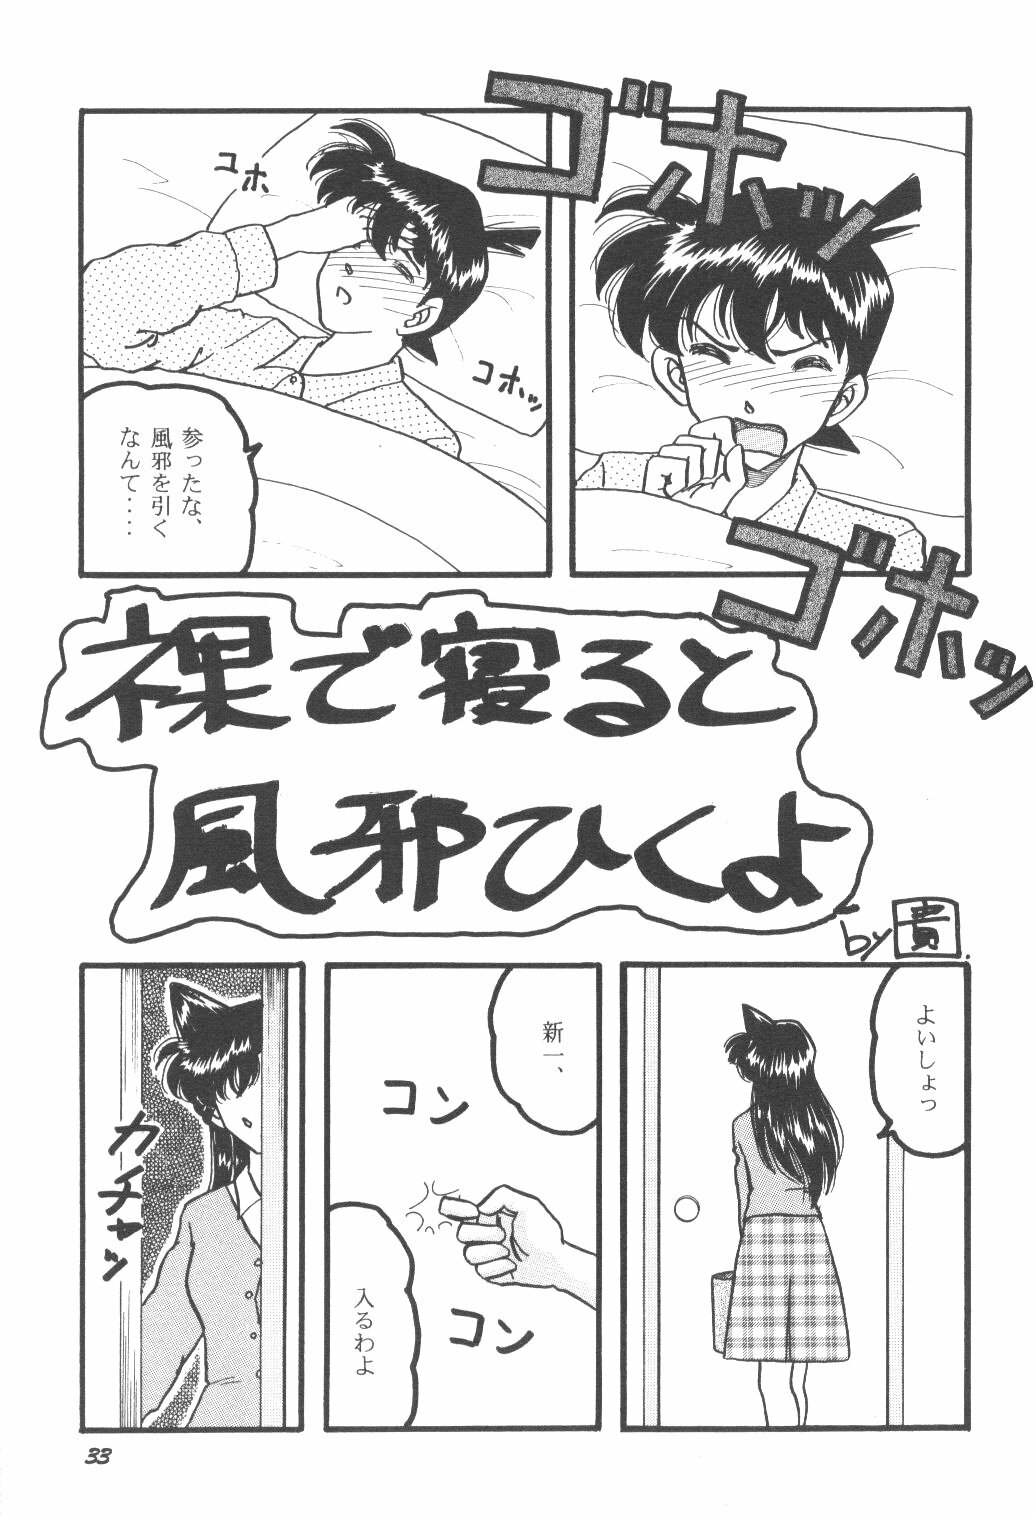 [Studio Boxer (Shima Takashi, Taka)] HOHETO 23 (Detective Conan) page 32 full